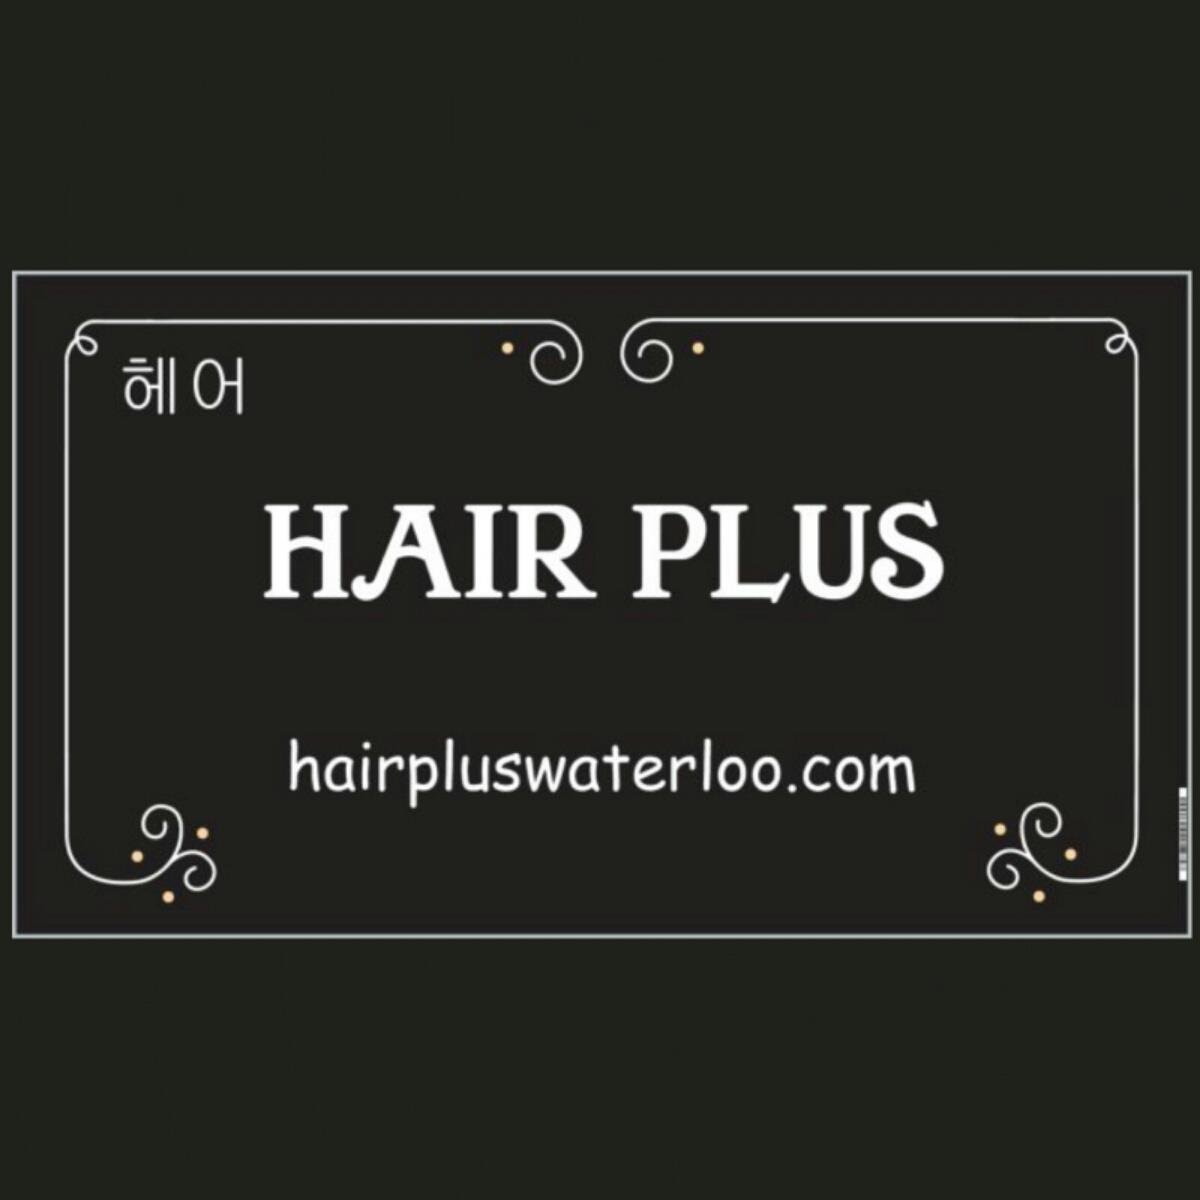 HAIR PLUS